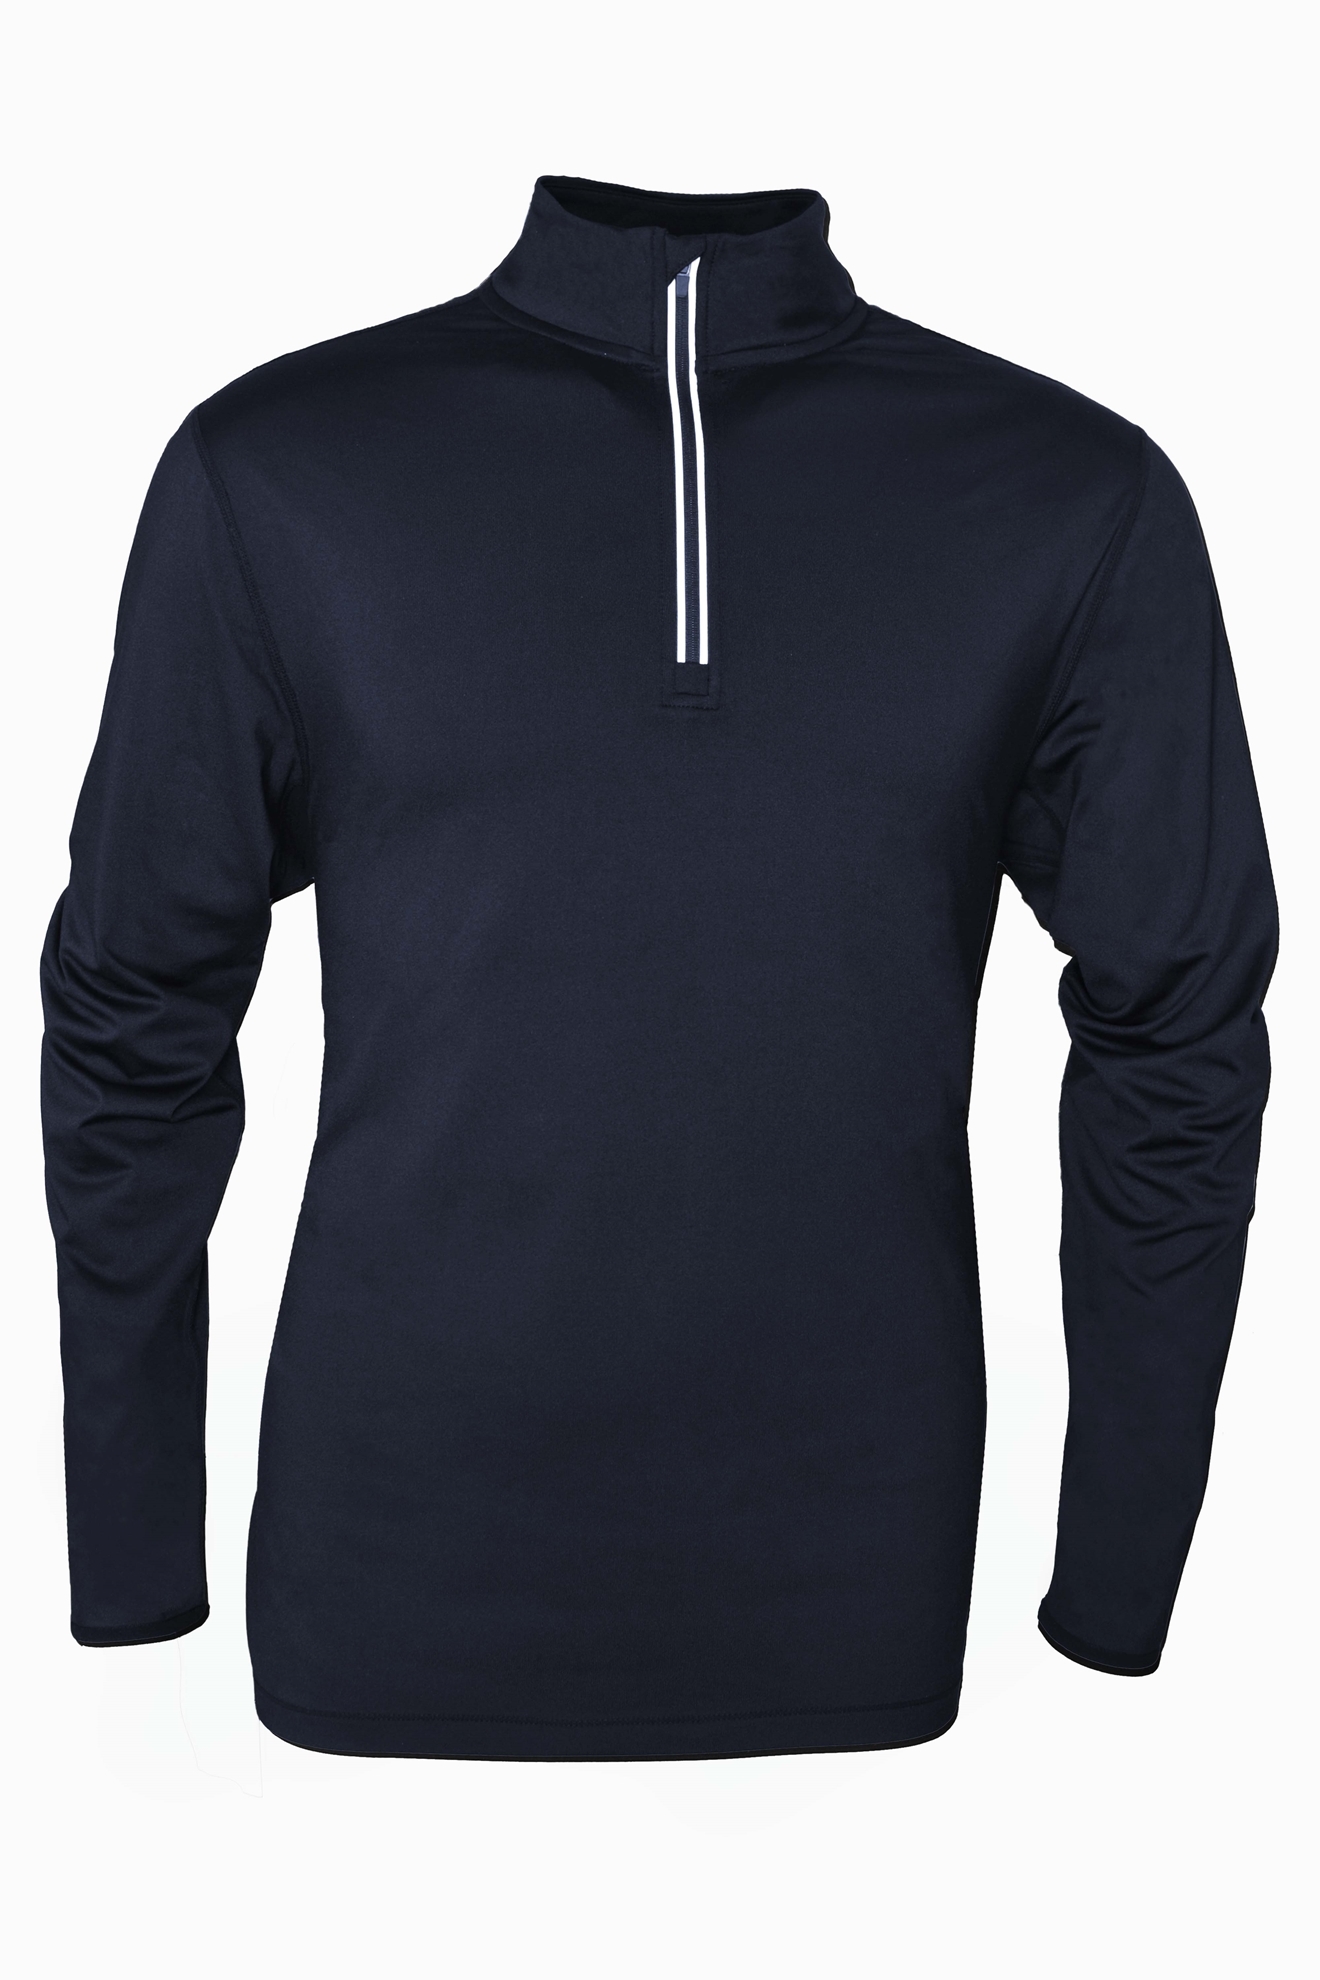 BAW Athletic Wear F530 - Men's 1/4 zip Comfort Weight $20.45 - Men's Fleece